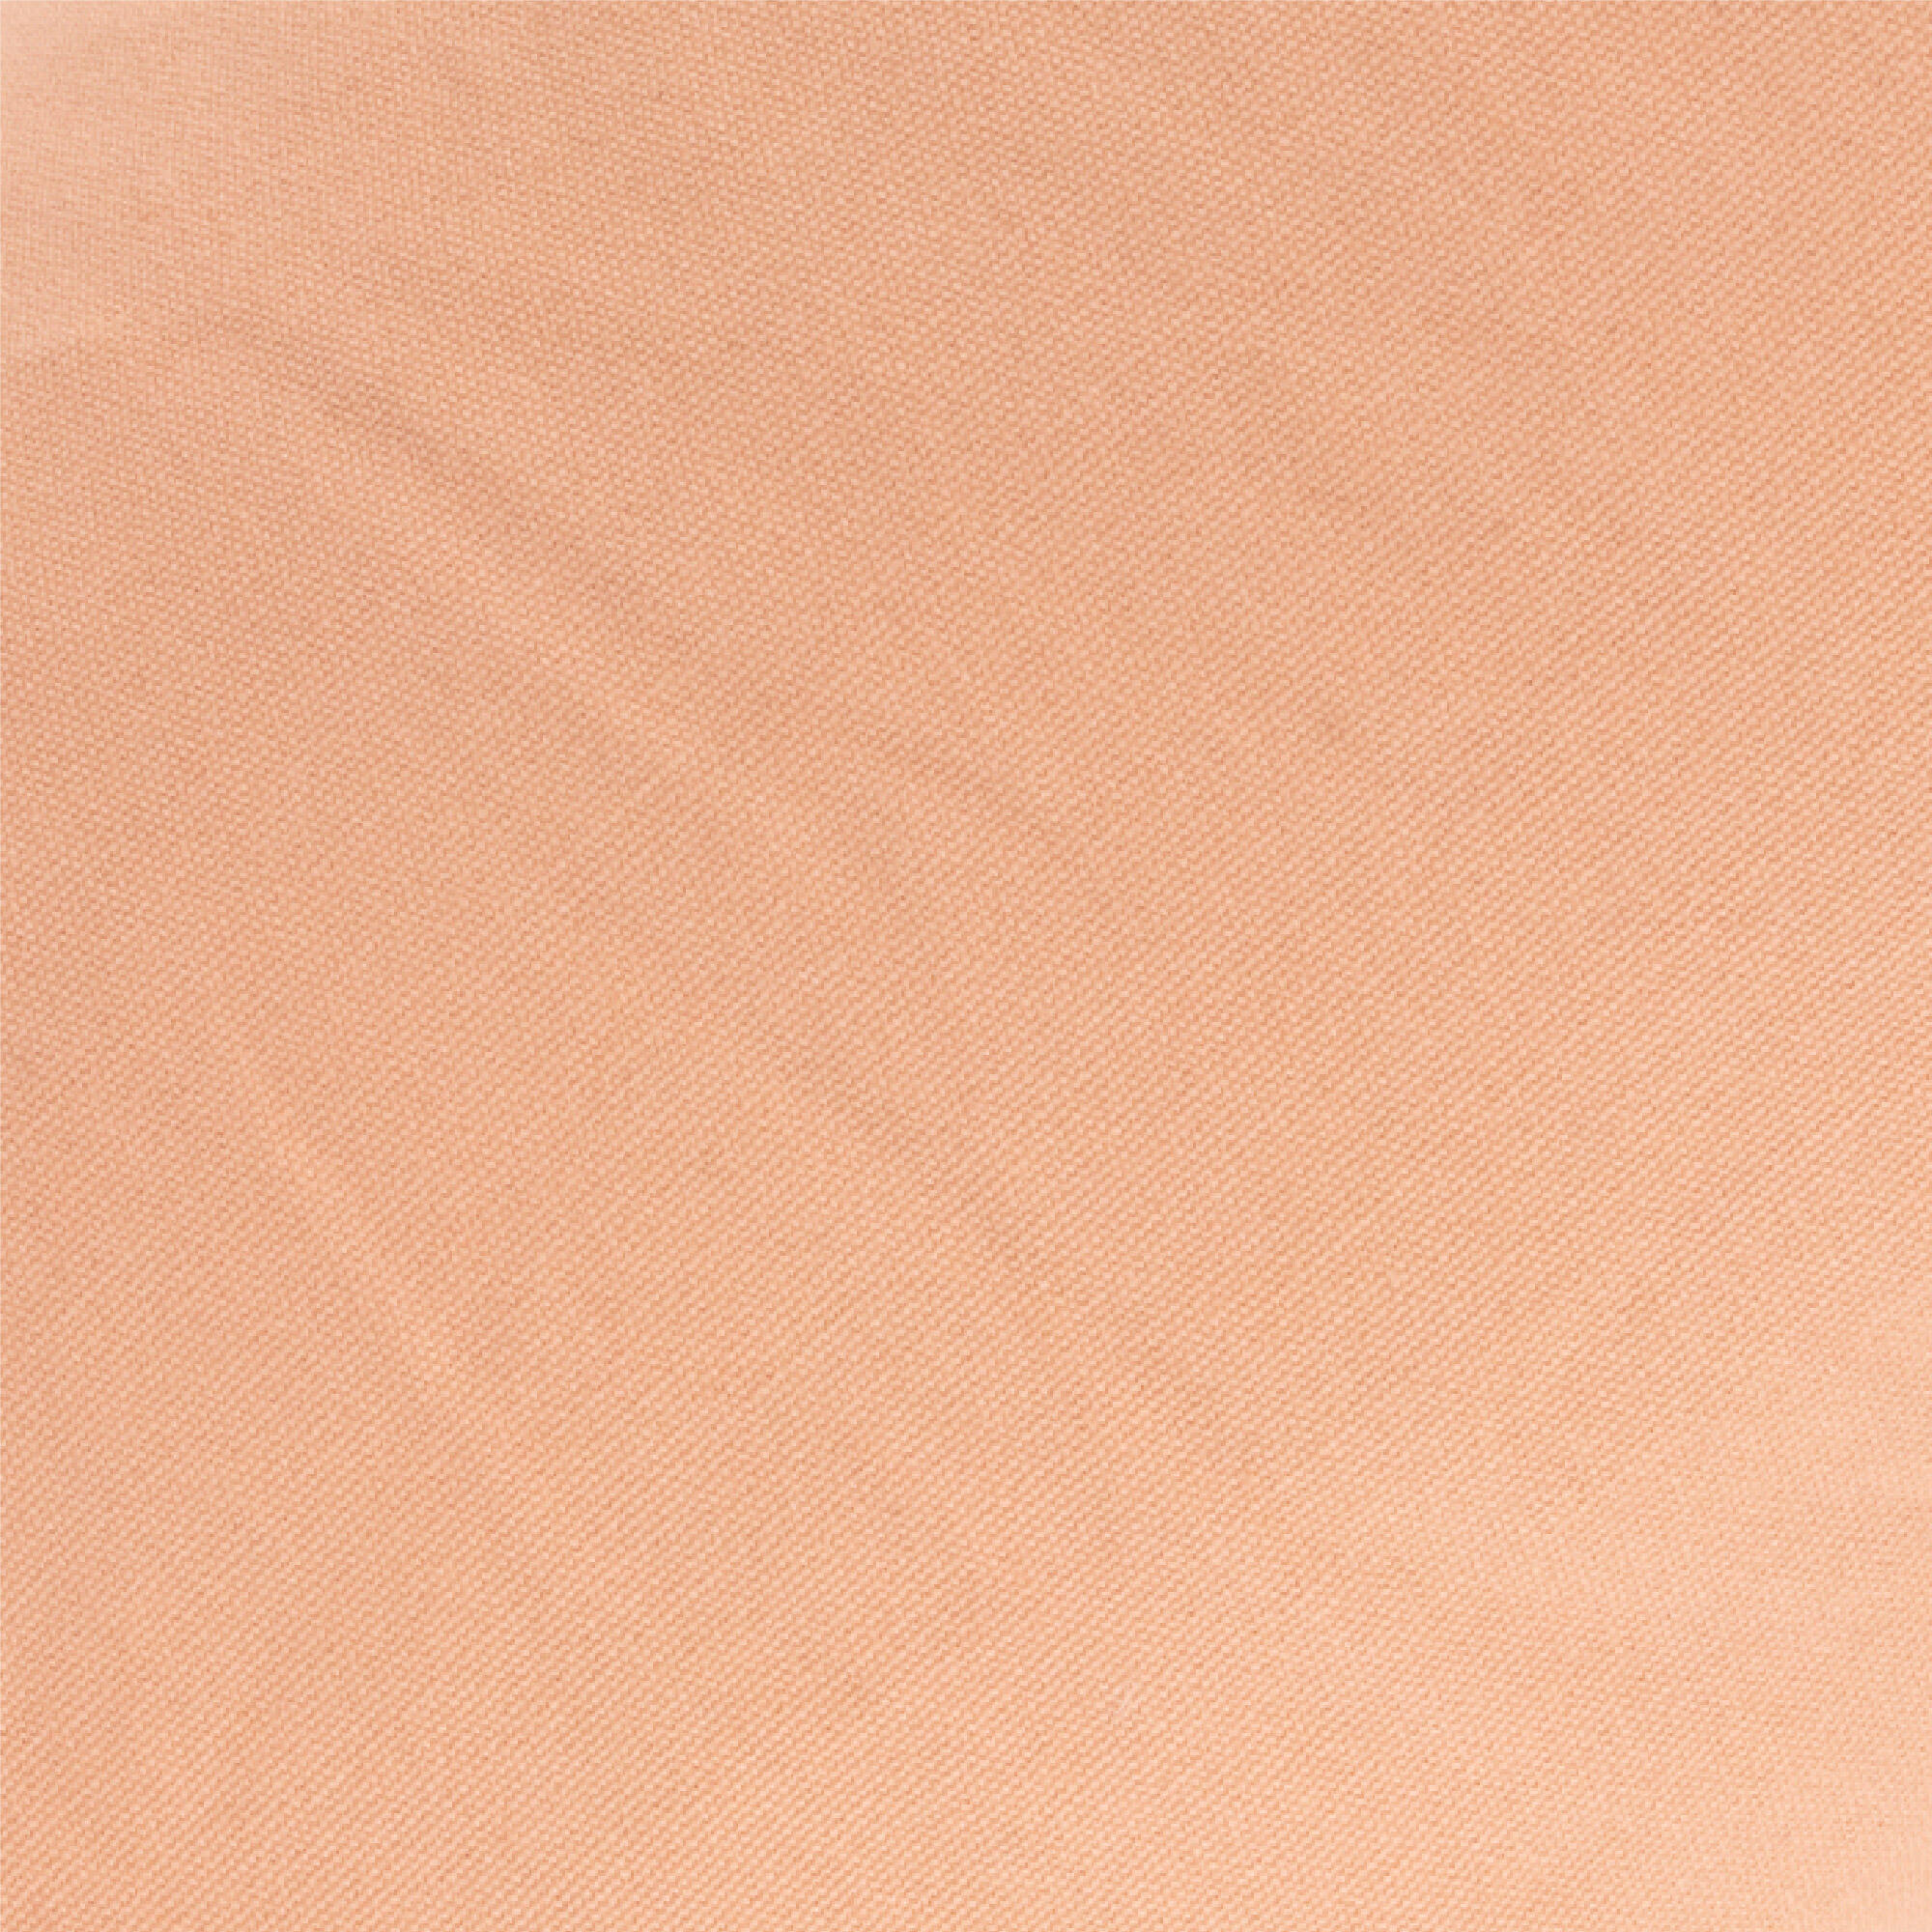 Buckwheat Support Bolster Pillow - Pink 7/8